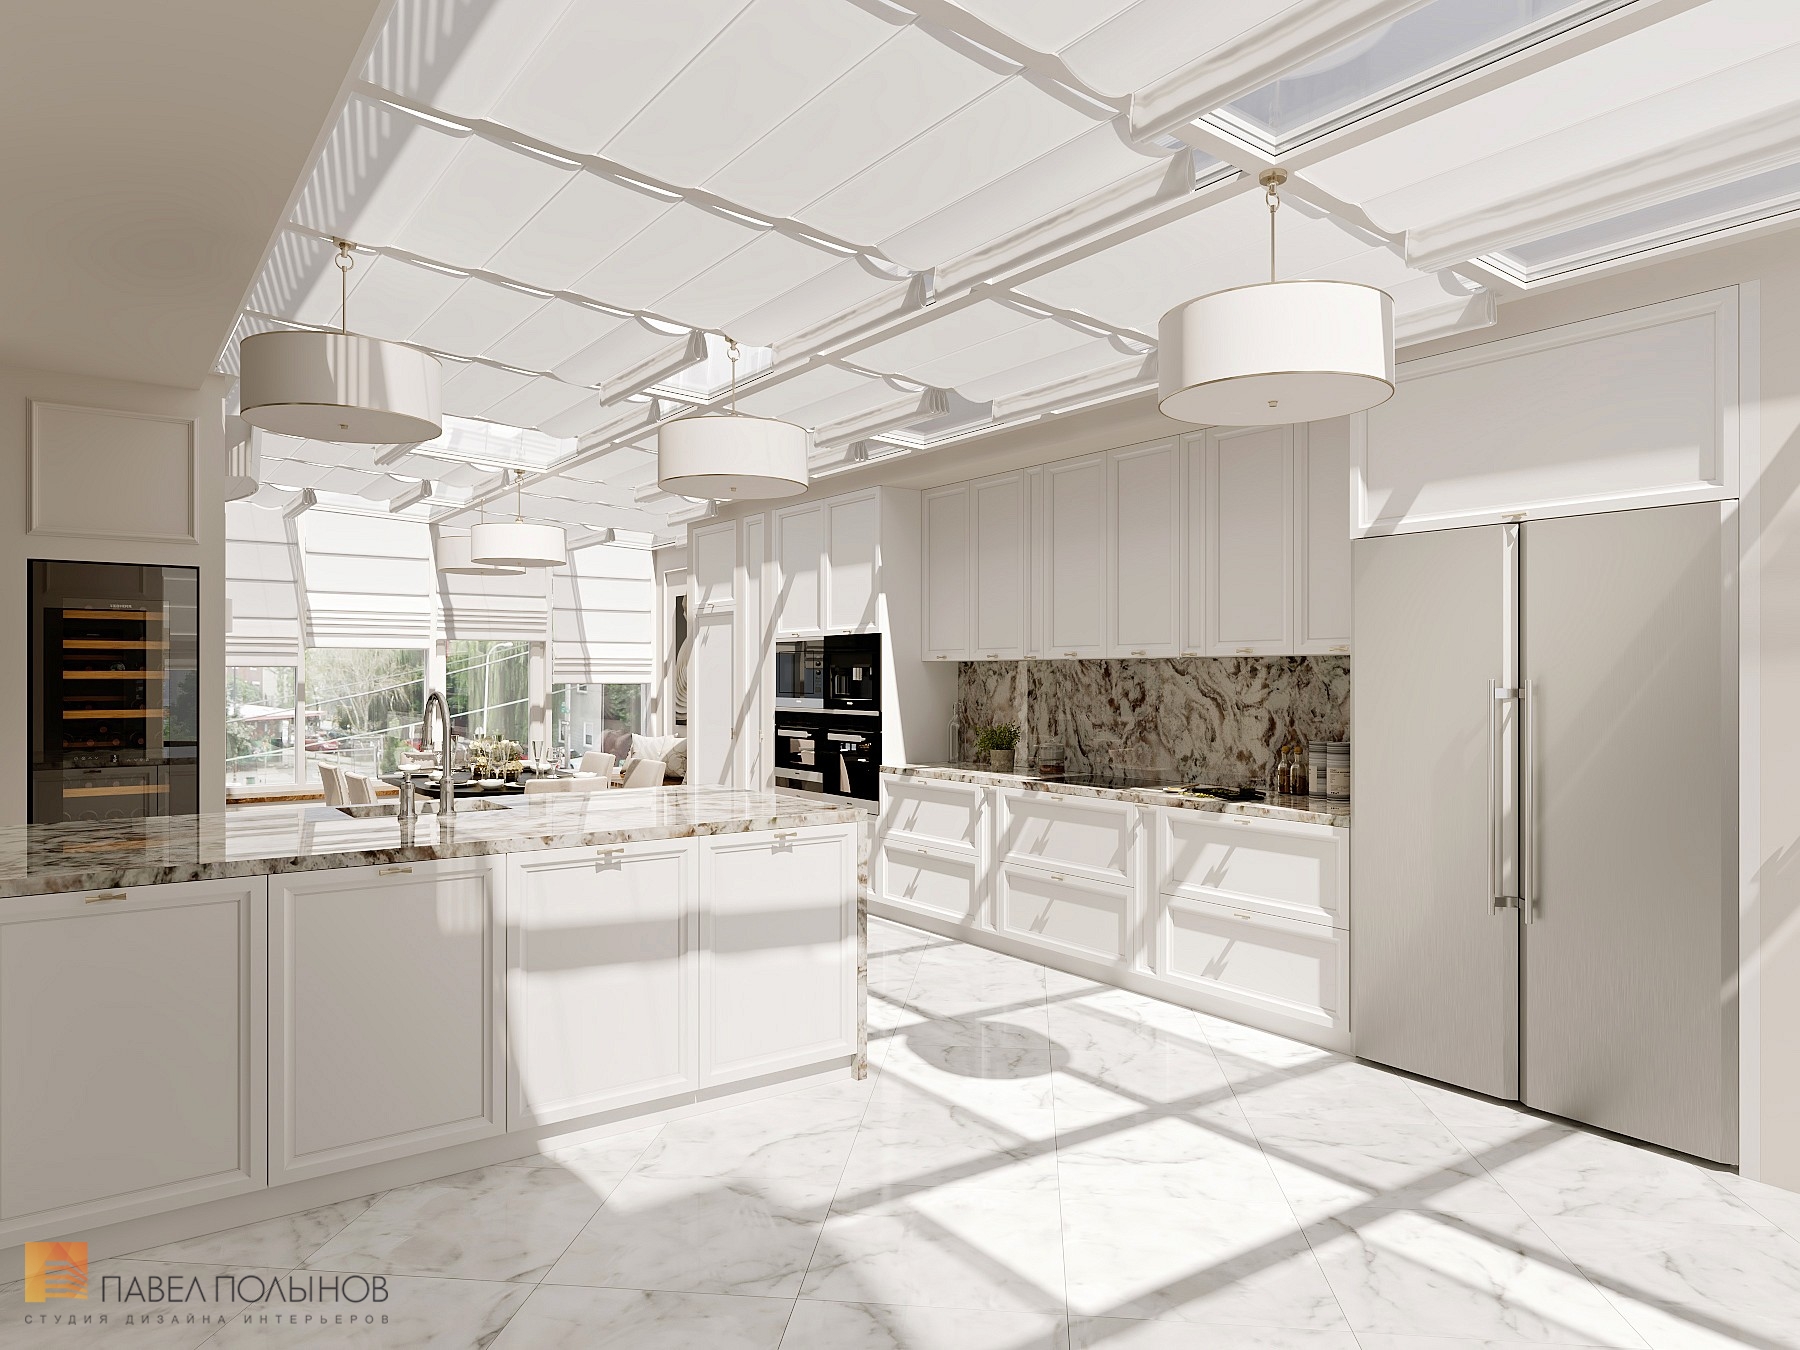 Фото дизайн интерьера кухни из проекта «Интерьер квартиры 200 кв.м. в стиле Ар-деко, ЖК «Граф Орлов»»